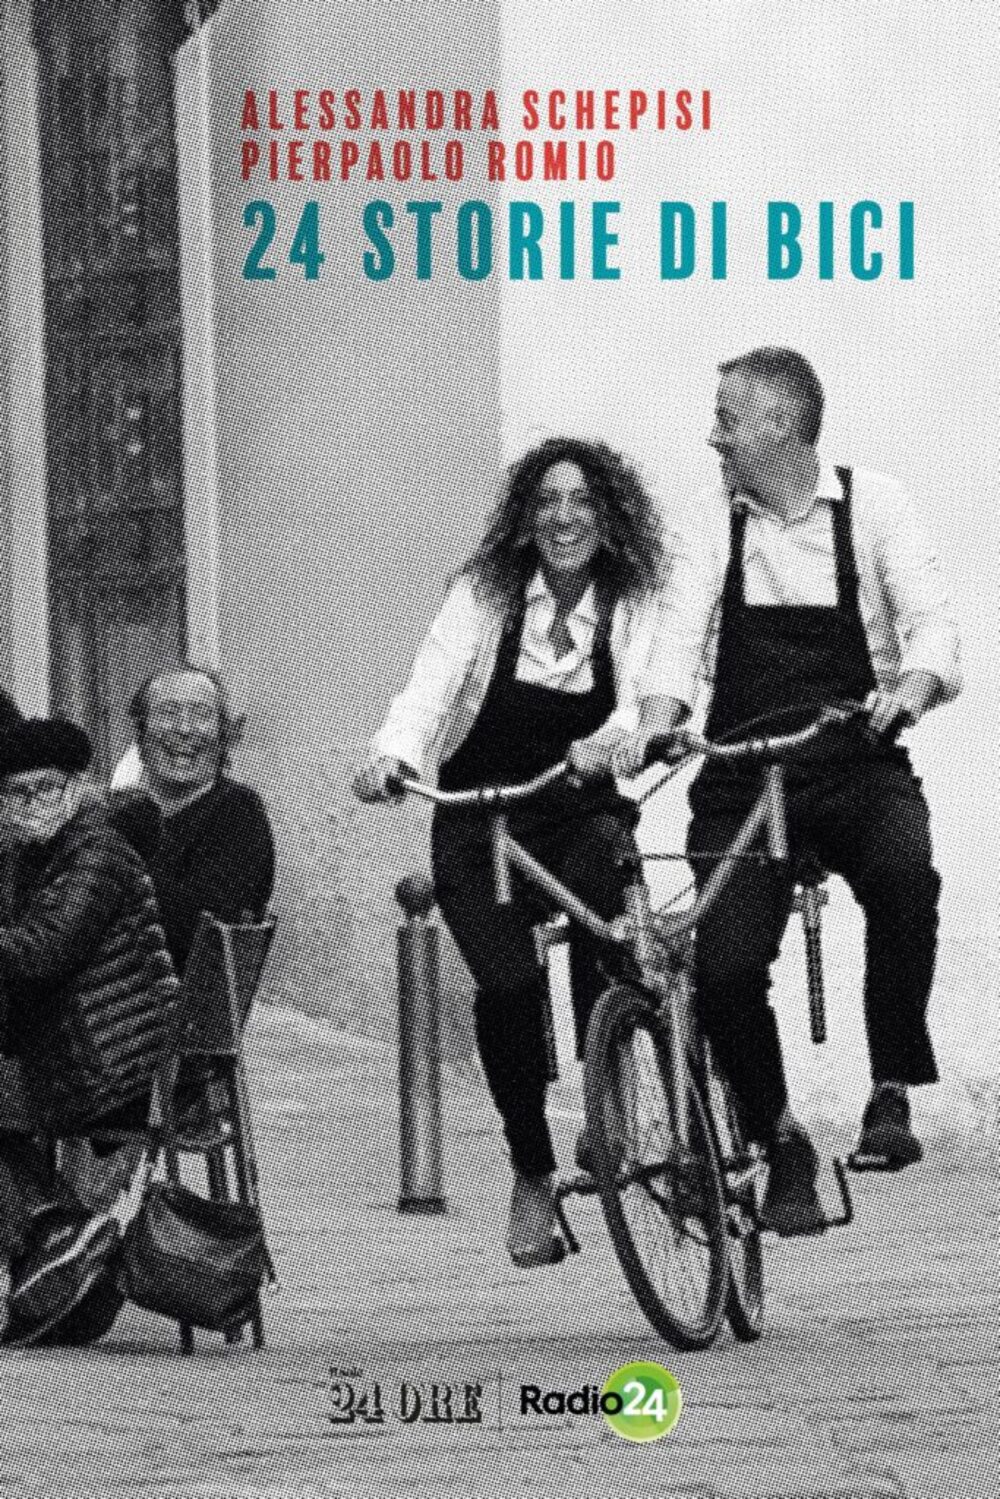 24 storie in bici